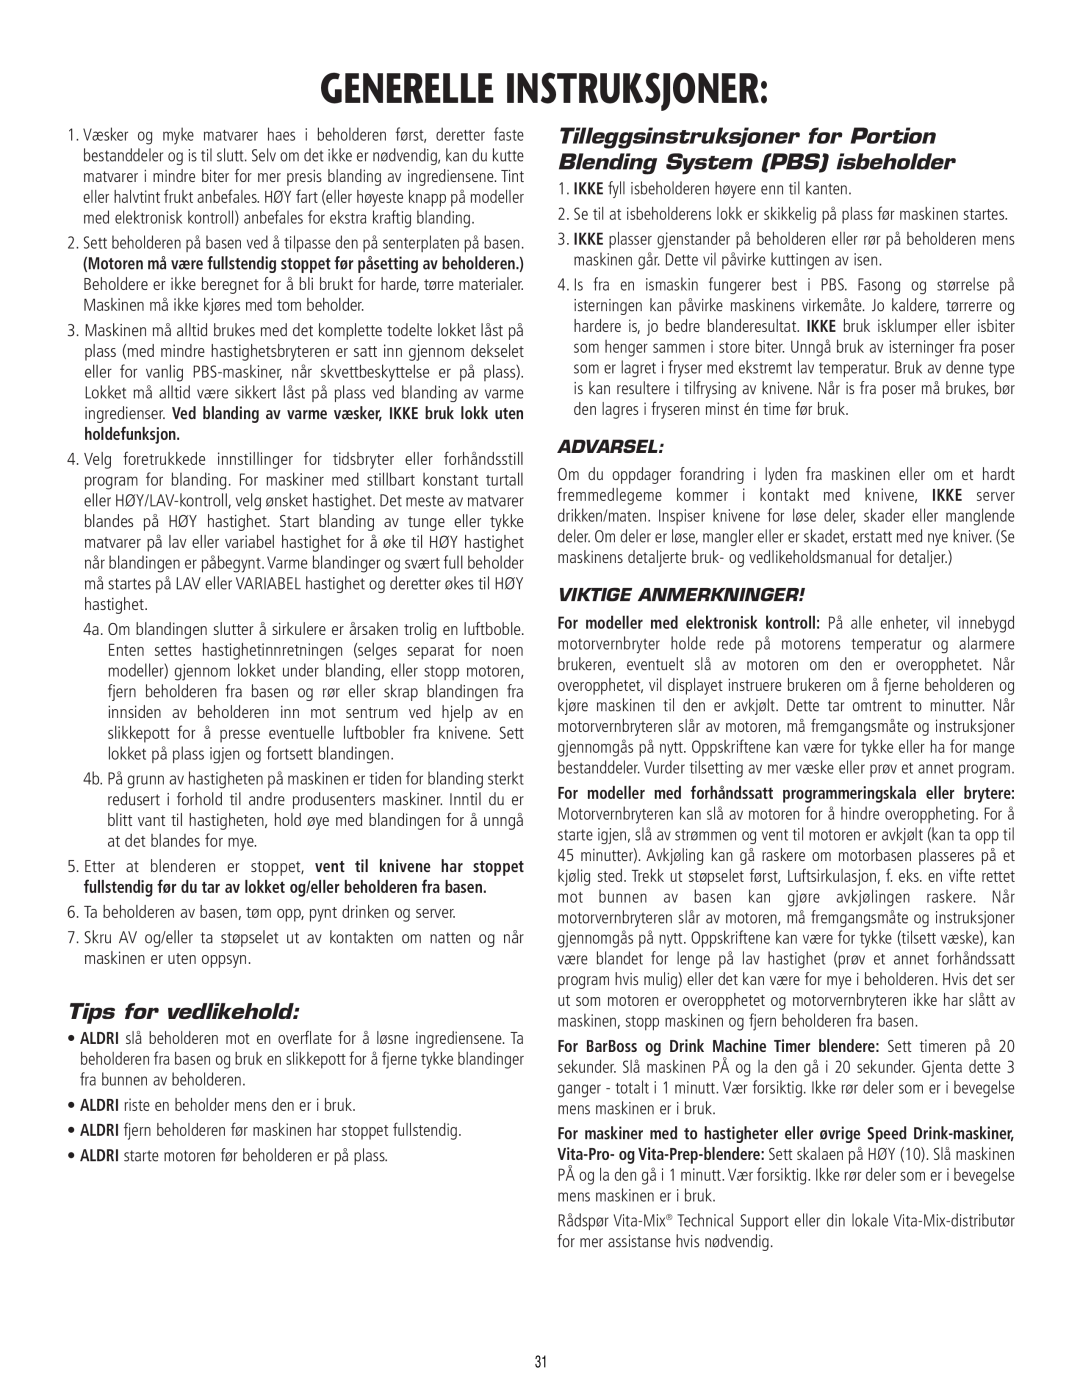 Vita-Mix 101807 manual Generelle Instruksjoner, Tips for vedlikehold, Advarsel, Viktige Anmerkninger 